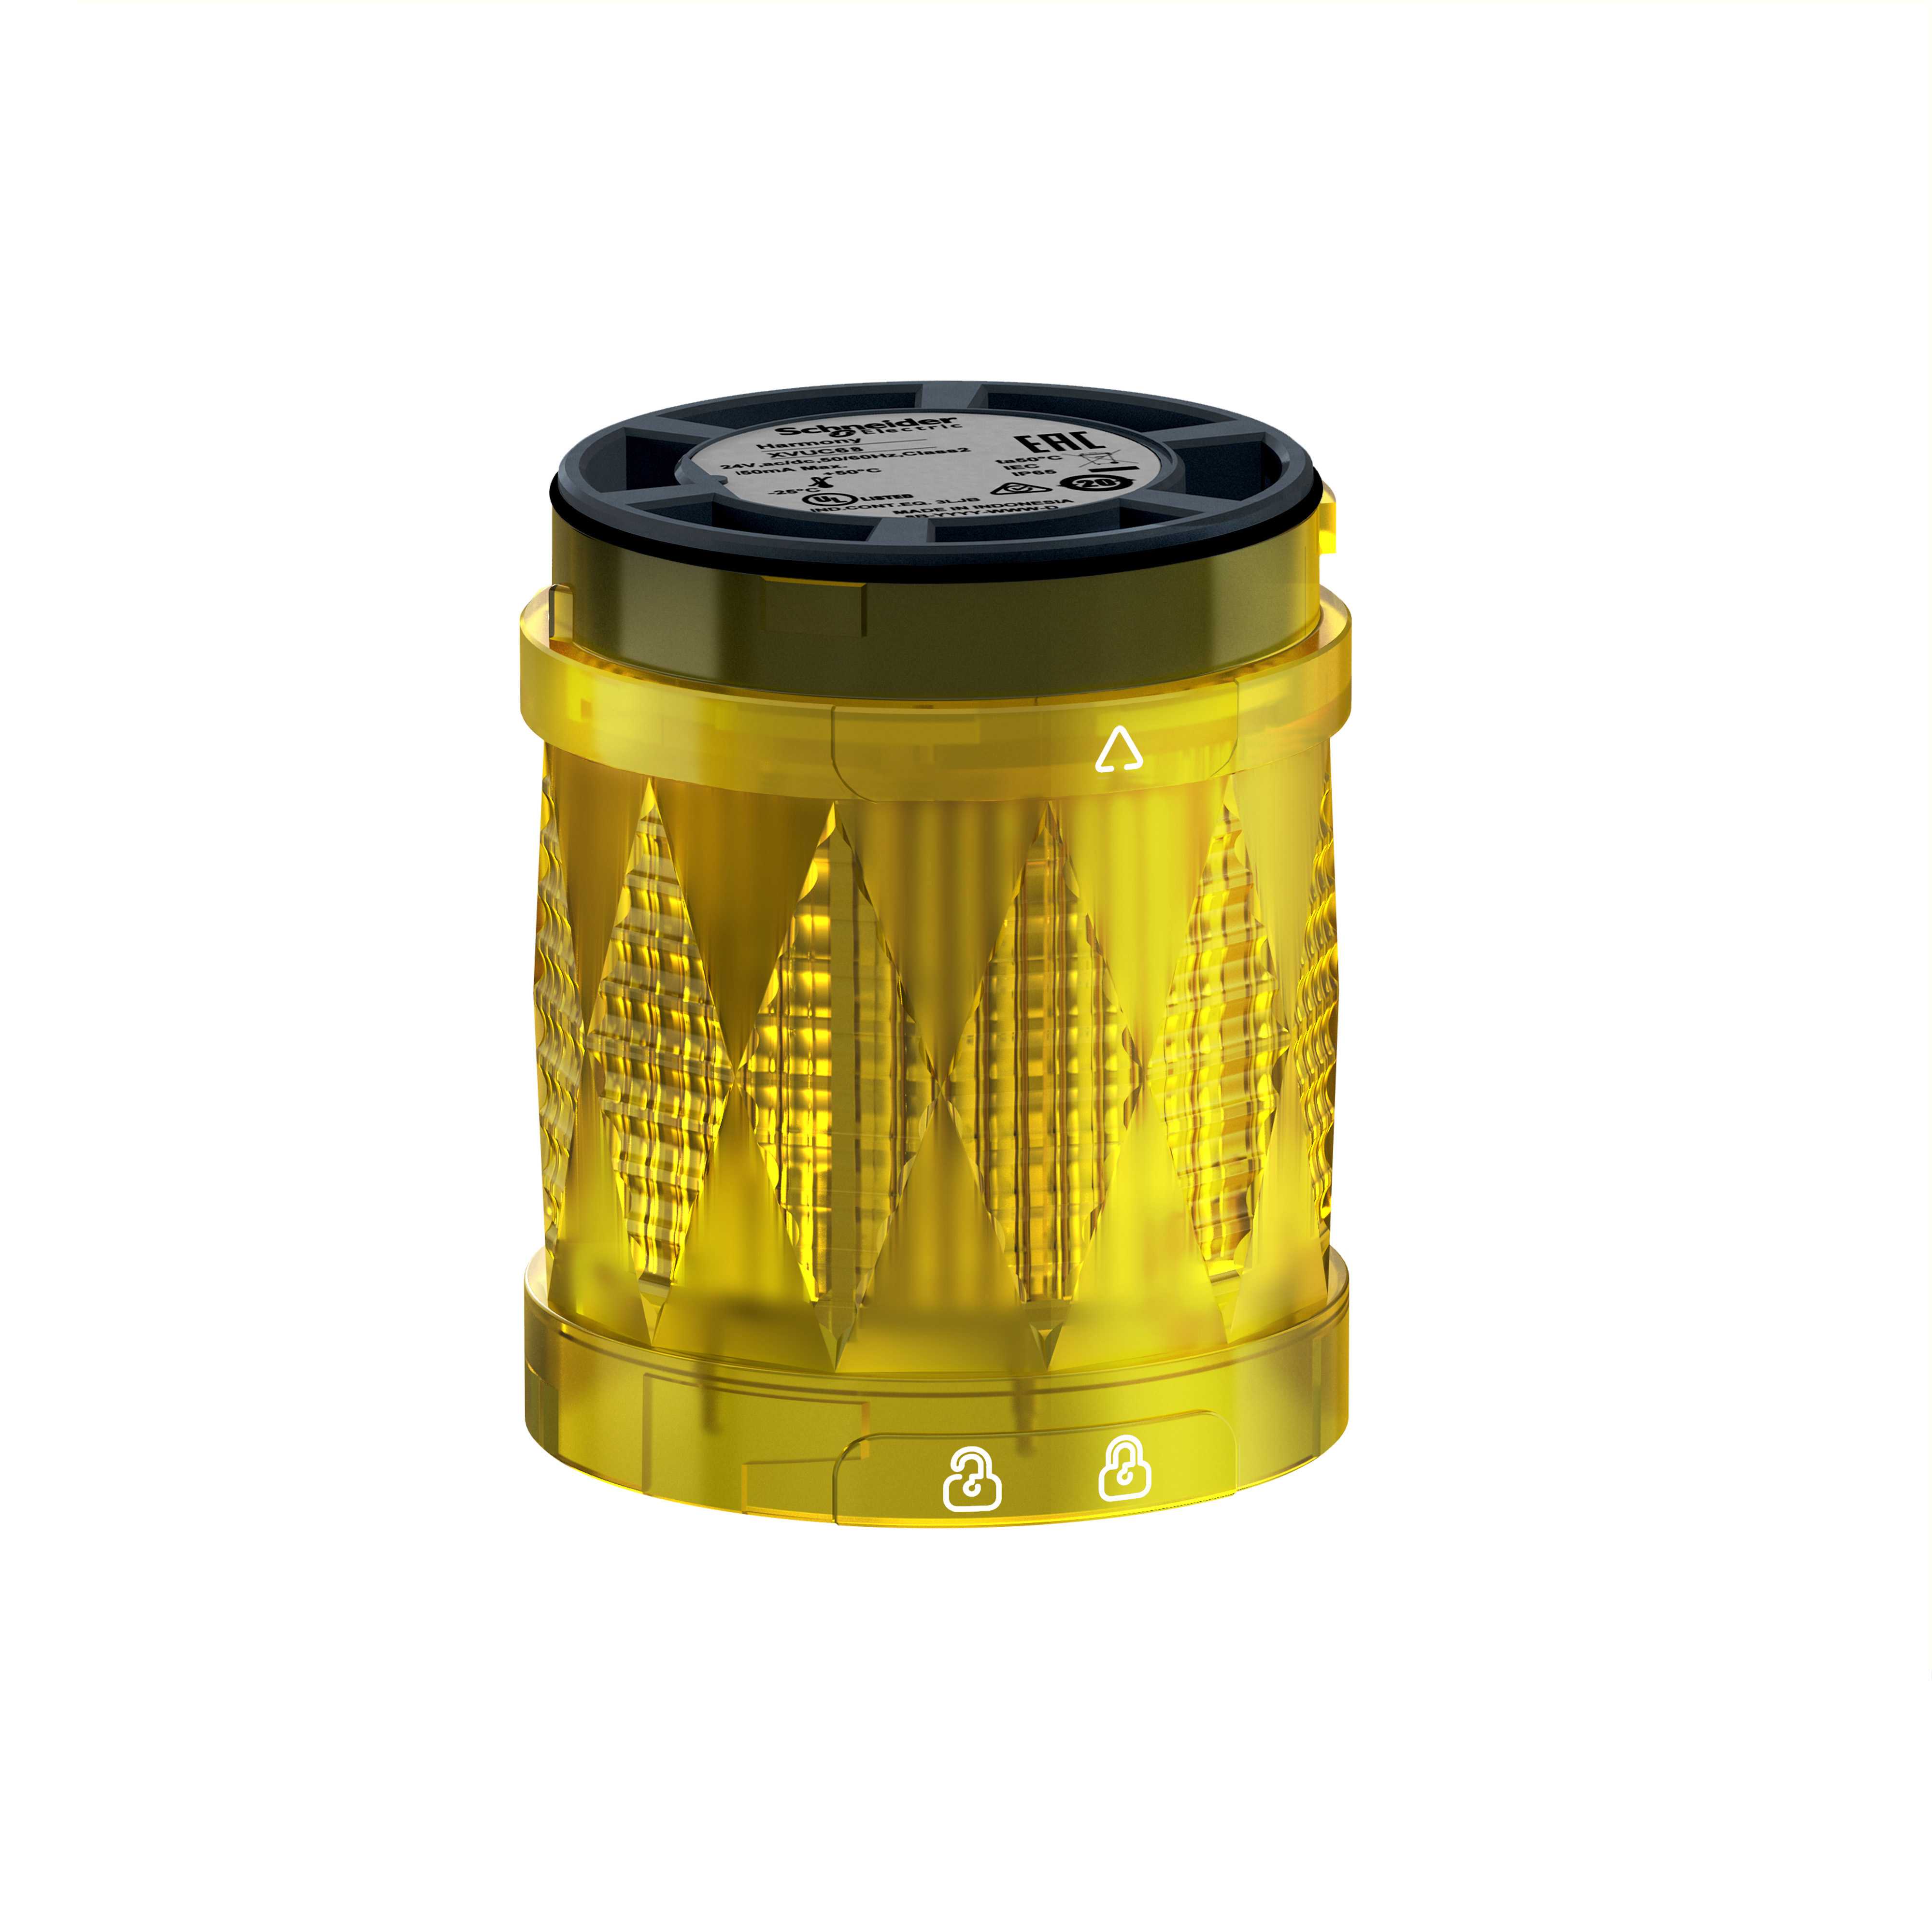 Telemecanique - Ø60 mm LED lysenhet for XVU lyskolonne i gul farge med kraftig flash